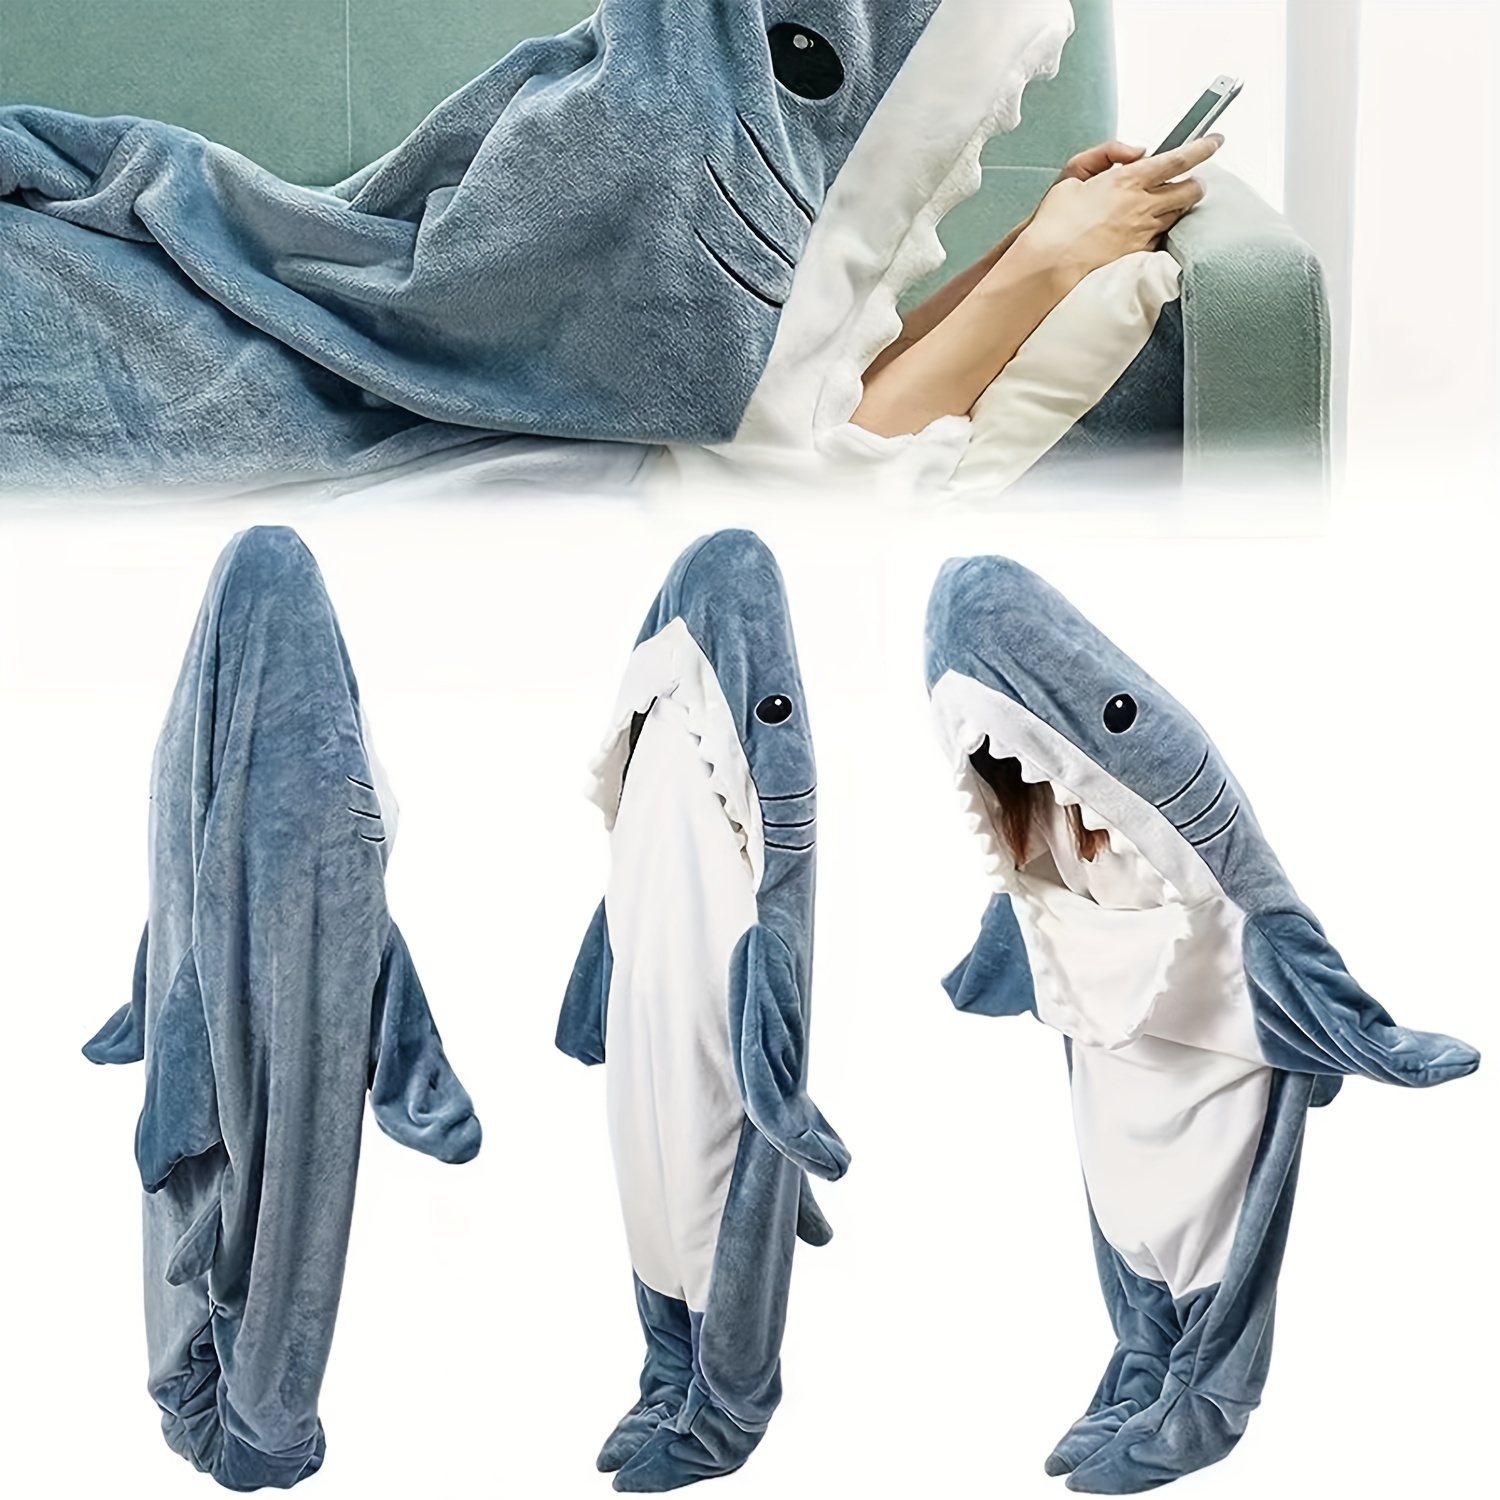 

1pc Shark Blanket Adult Boys Girls Shark Blanket Wearable Shark Blanket Shark Sleeping Bag Christmas Gift